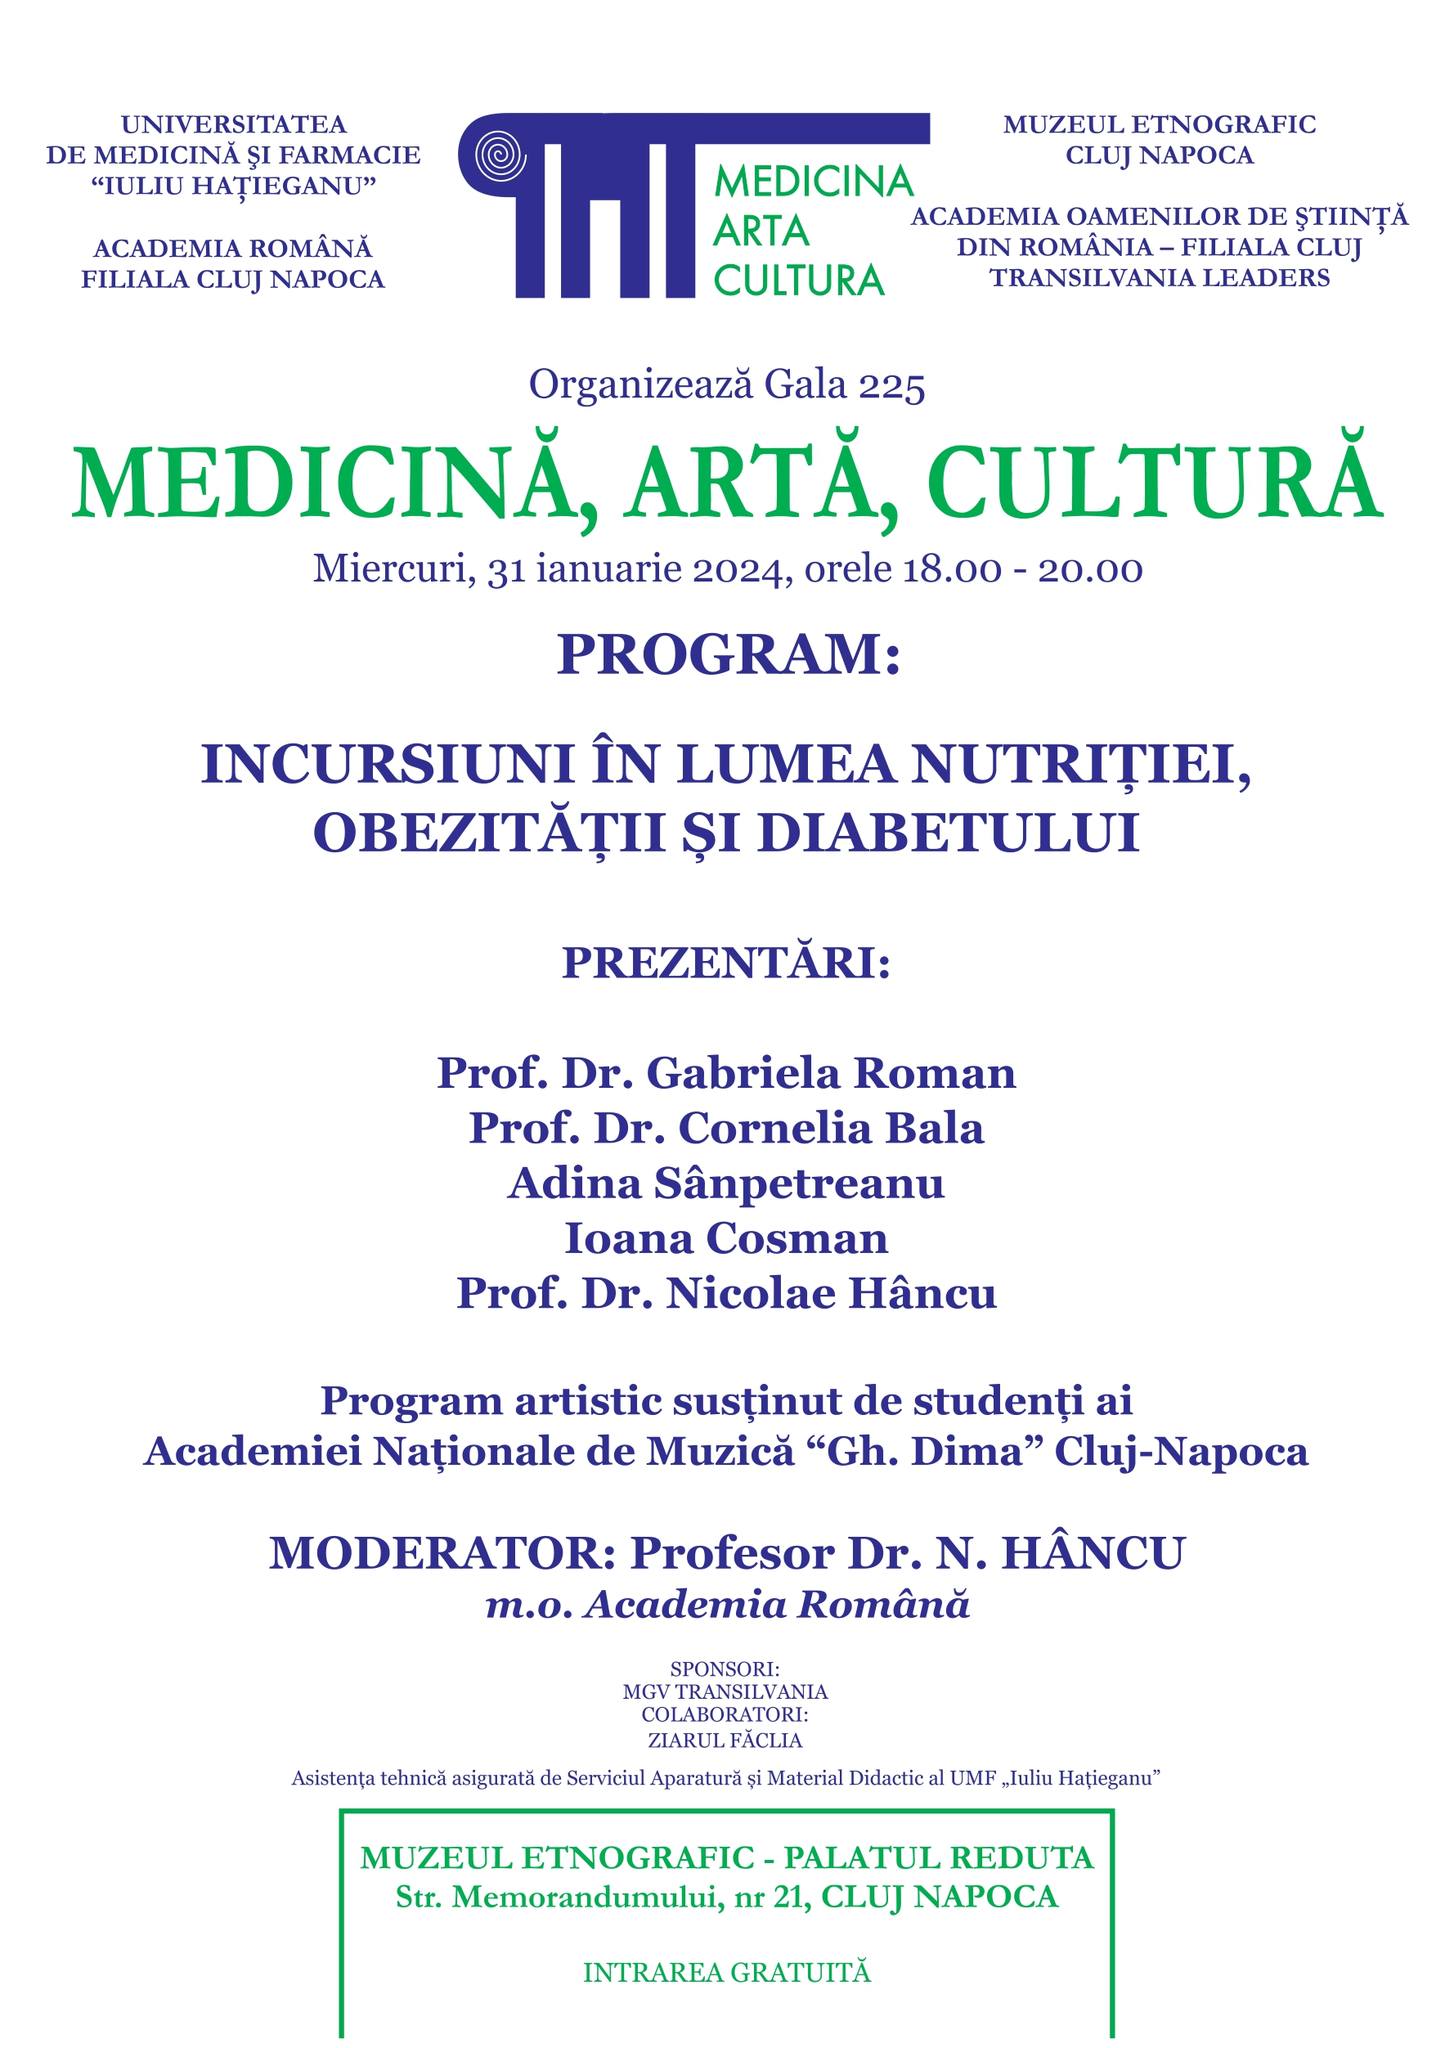 Gala de Medicină, Artă și Cultură, organizată pe 31 ianuarie la Muzeul Etnografic Cluj-Napoca